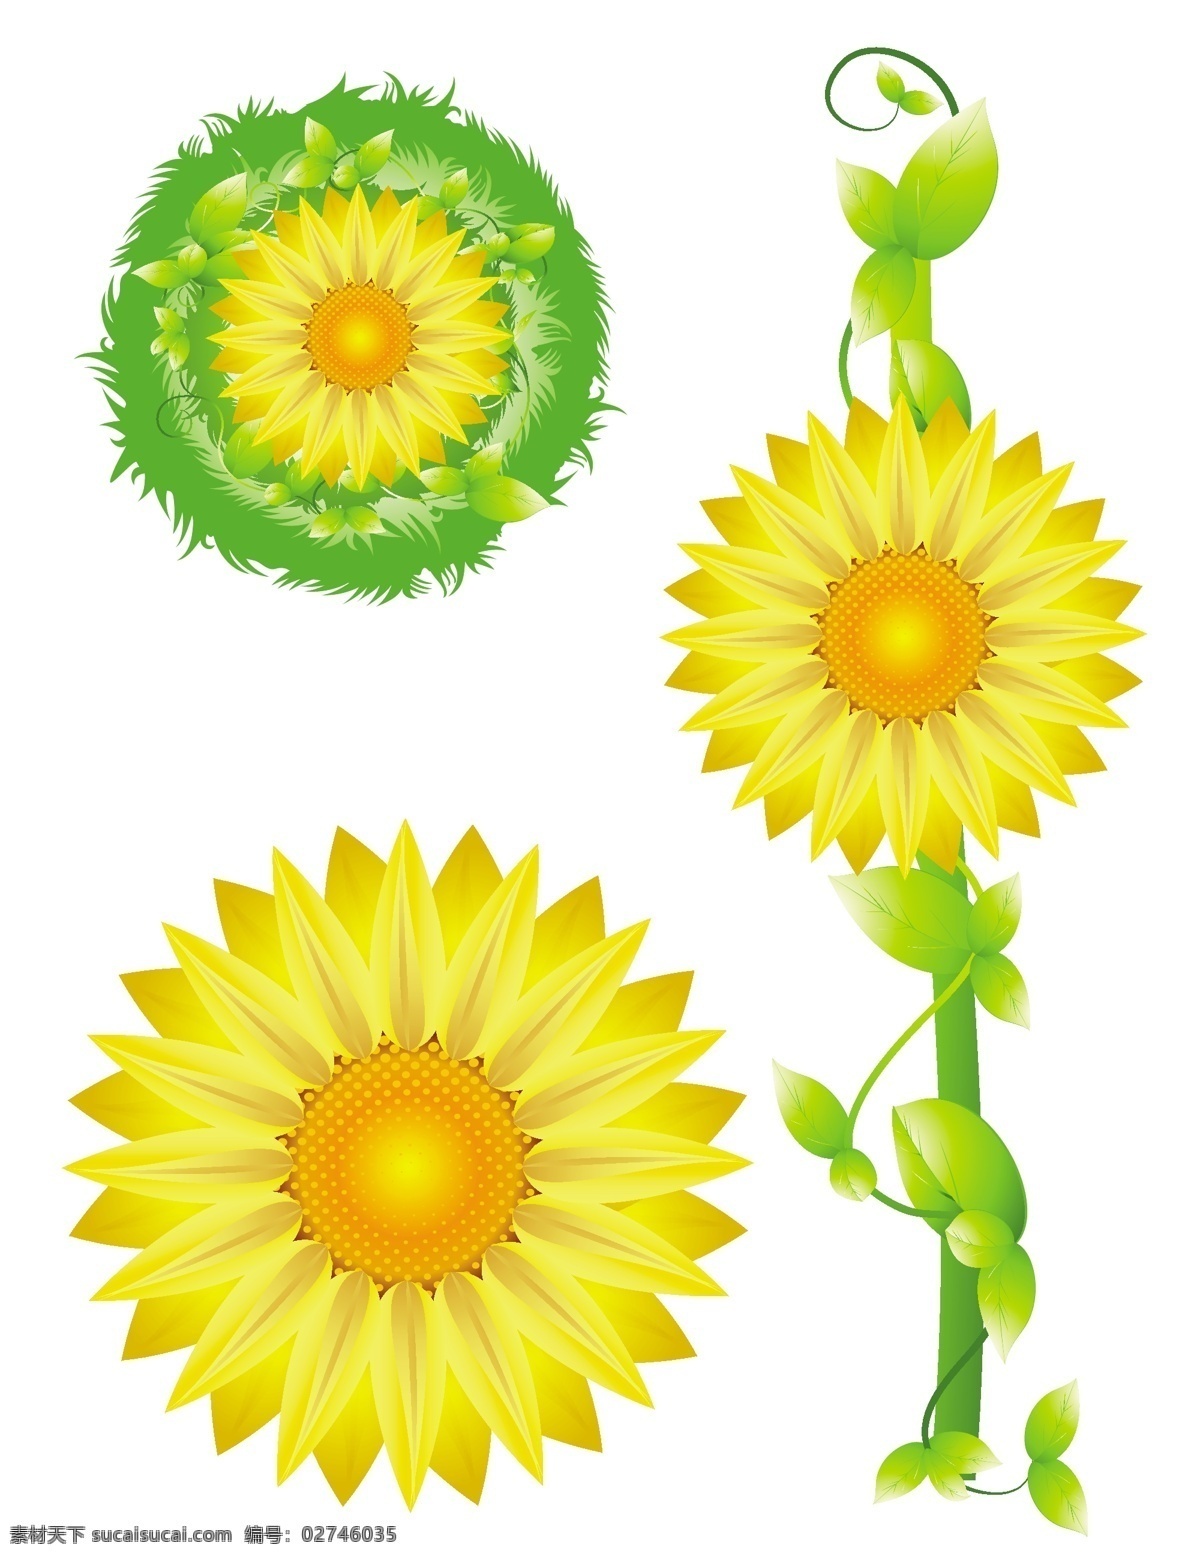 清新 太阳花 矢量 背景 个性 花朵 花卉 可爱 矢量素材 自然 矢量图 其他矢量图